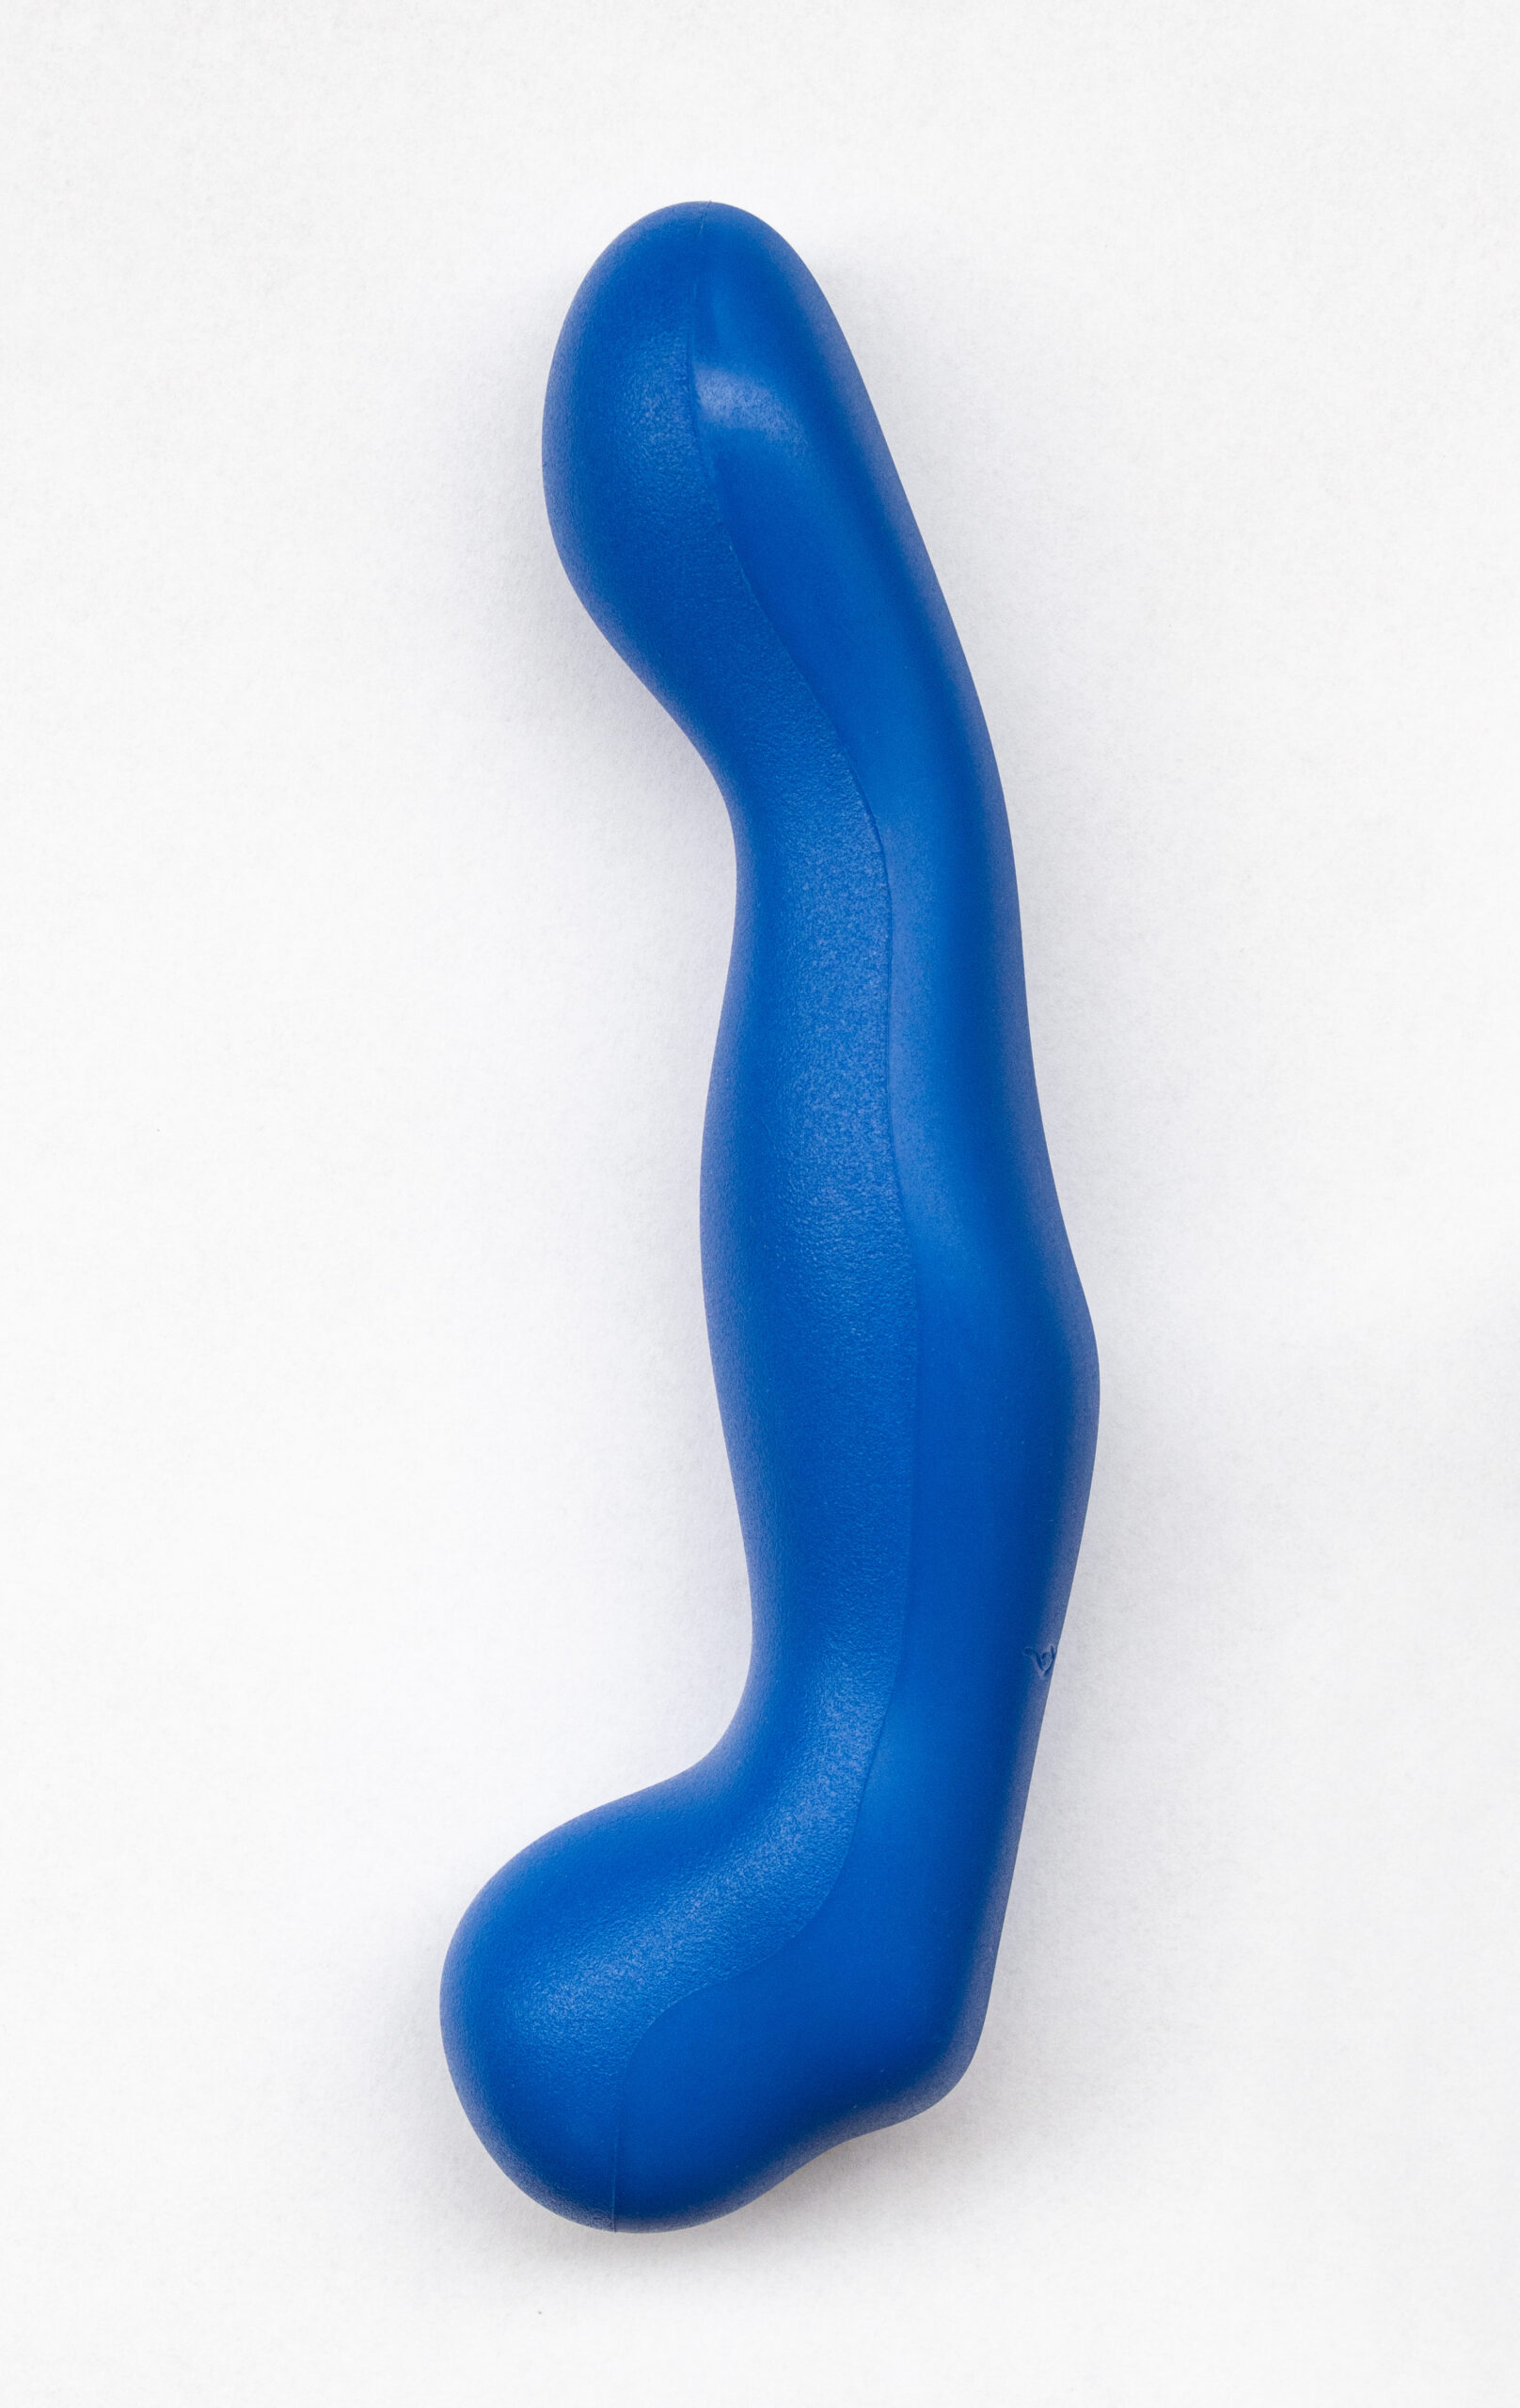 Der Xia One Dildo ist seitlich abgebildet in blau auf weißem Hintergrund. Er ist vorn breiter mit runder Spitze. Er wird dünner, dann etwas dicker für ein paar Zentimeter, anschließend wird er wieder etwas dünner und krümmt sich dann nach links und ist dort wieder so dick wie in der Mitte.